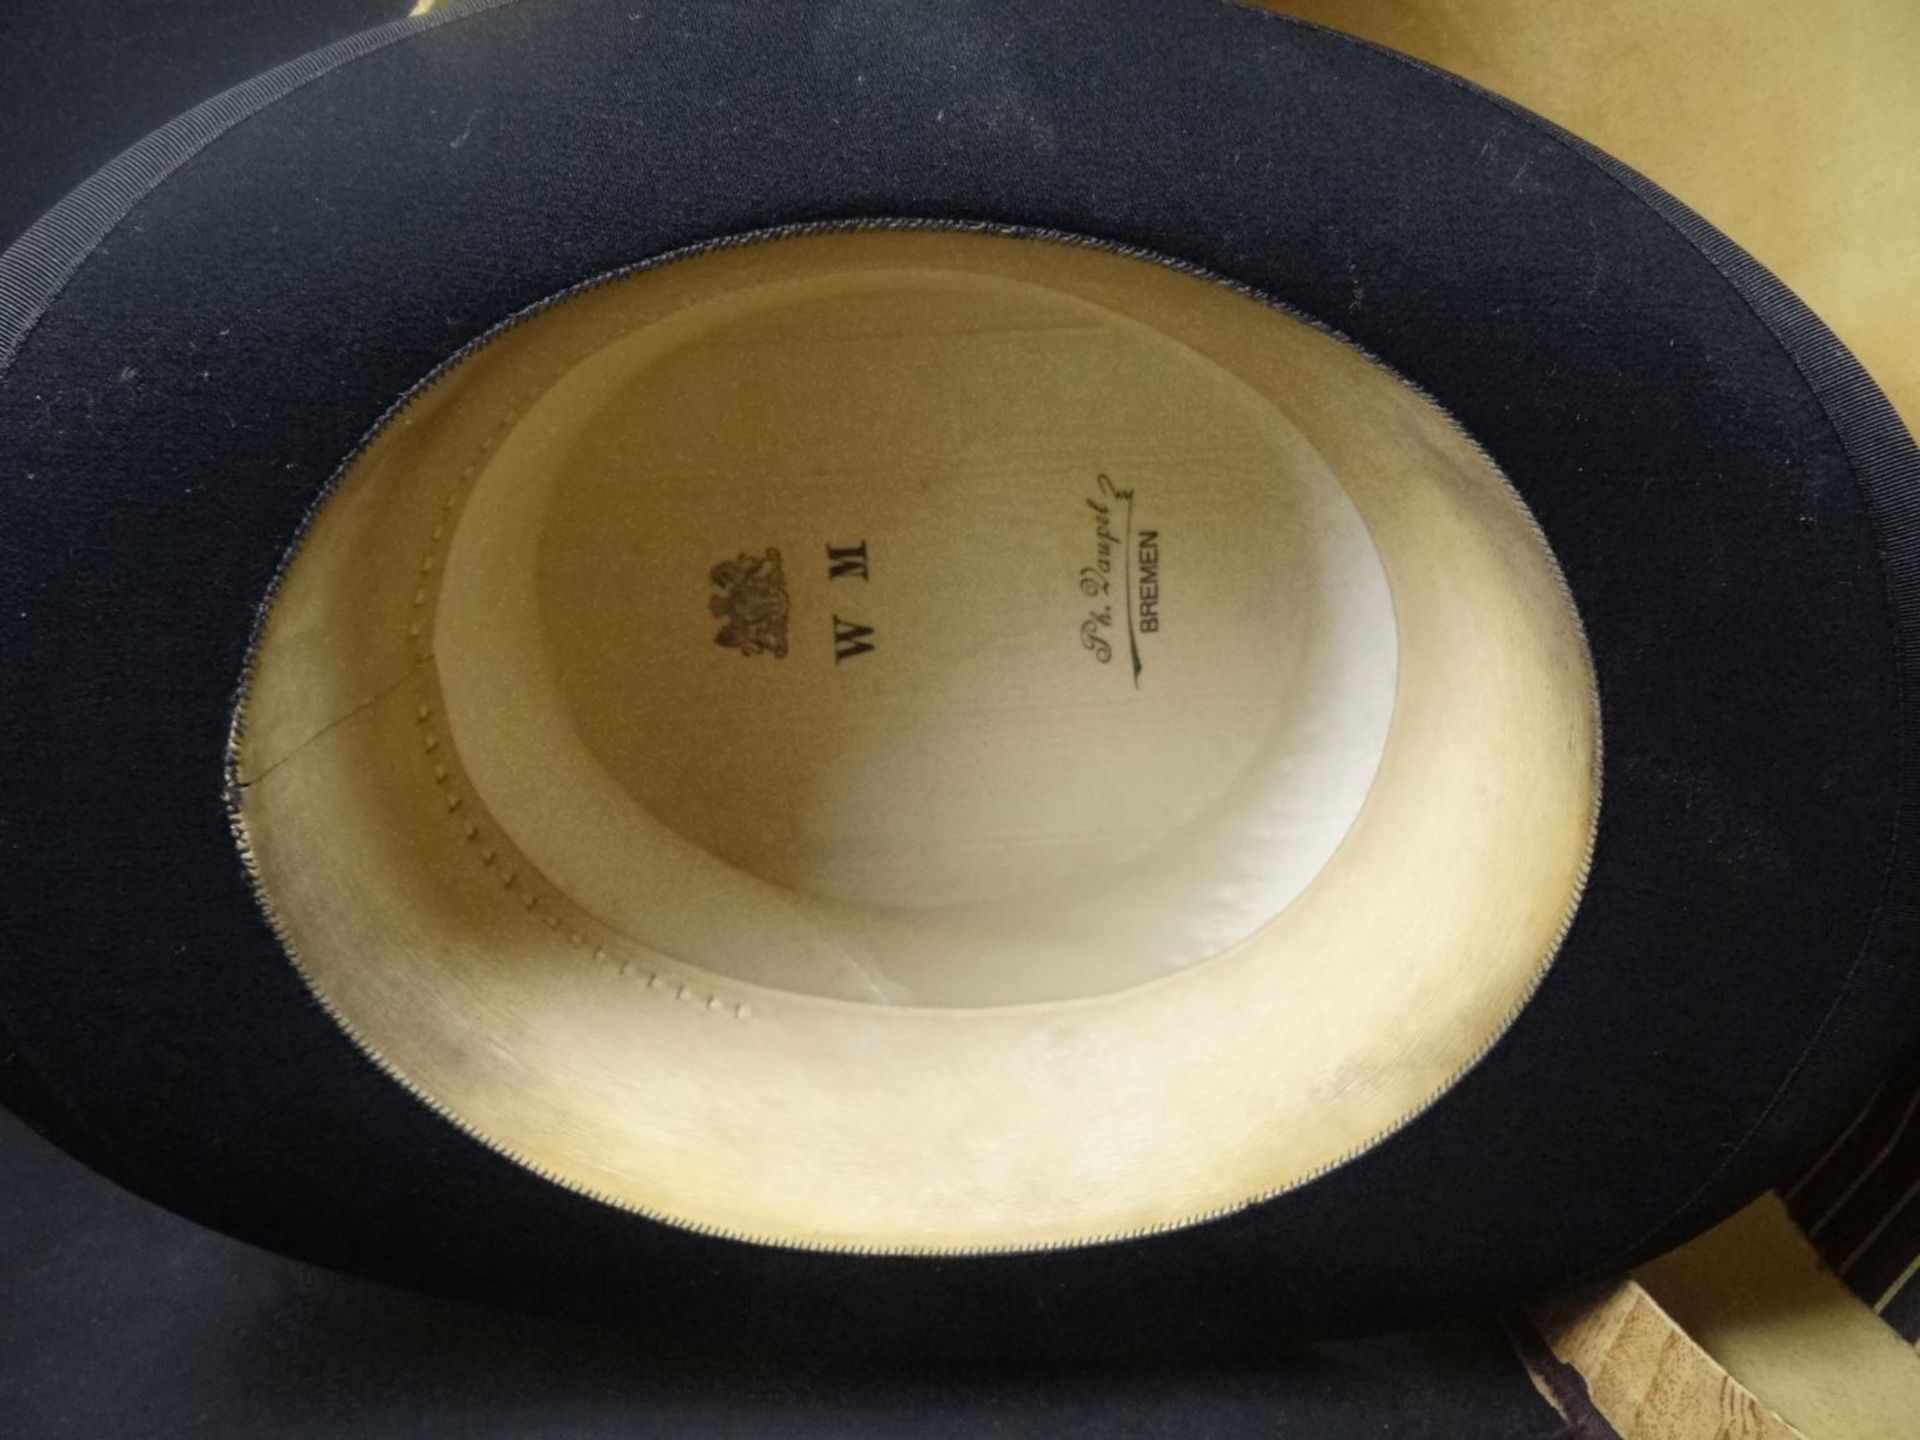 Zylinder in alter Hutschachtel, diese beschädigt, Hut sehr guter Zustan- - -22.61 % buyer's - Bild 5 aus 6